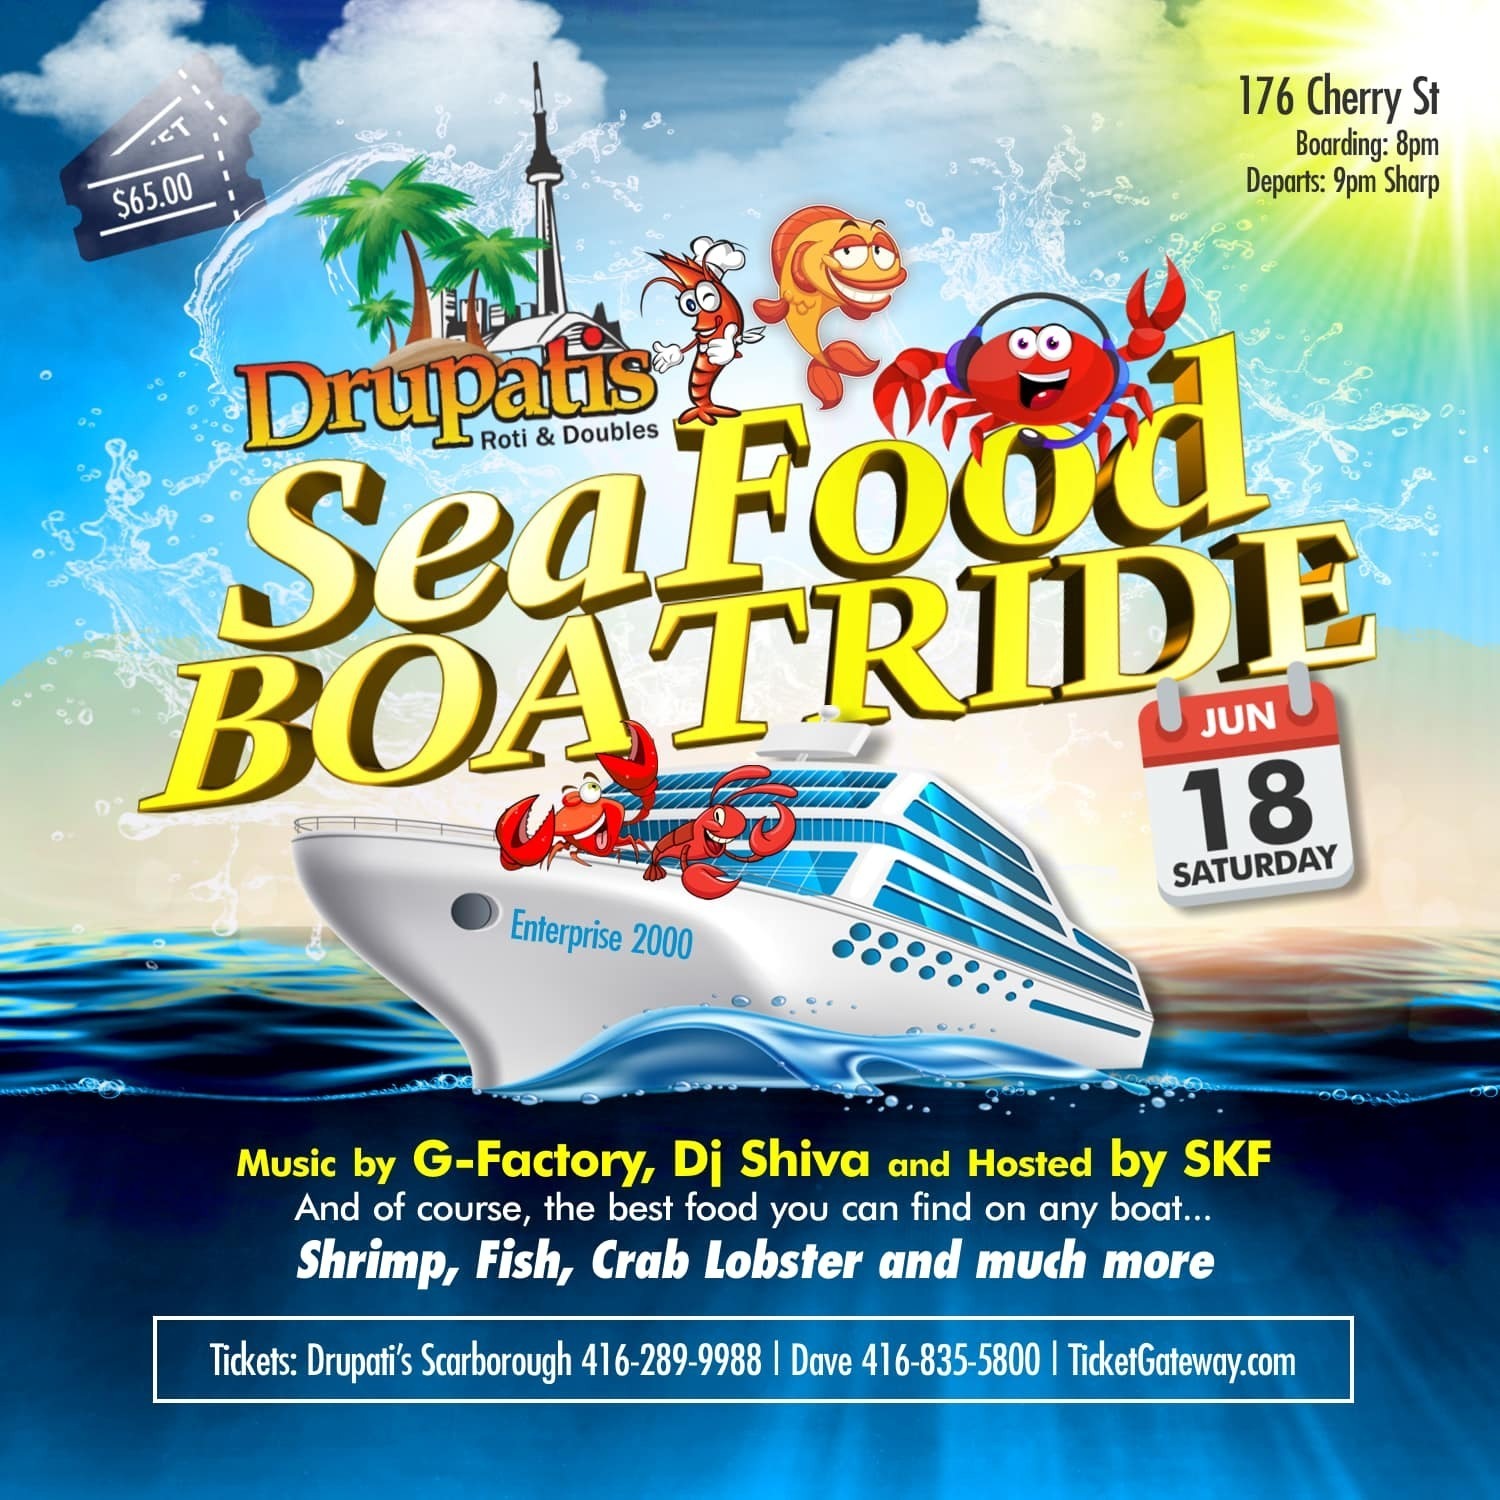 Drupatis Sea Food Boatride